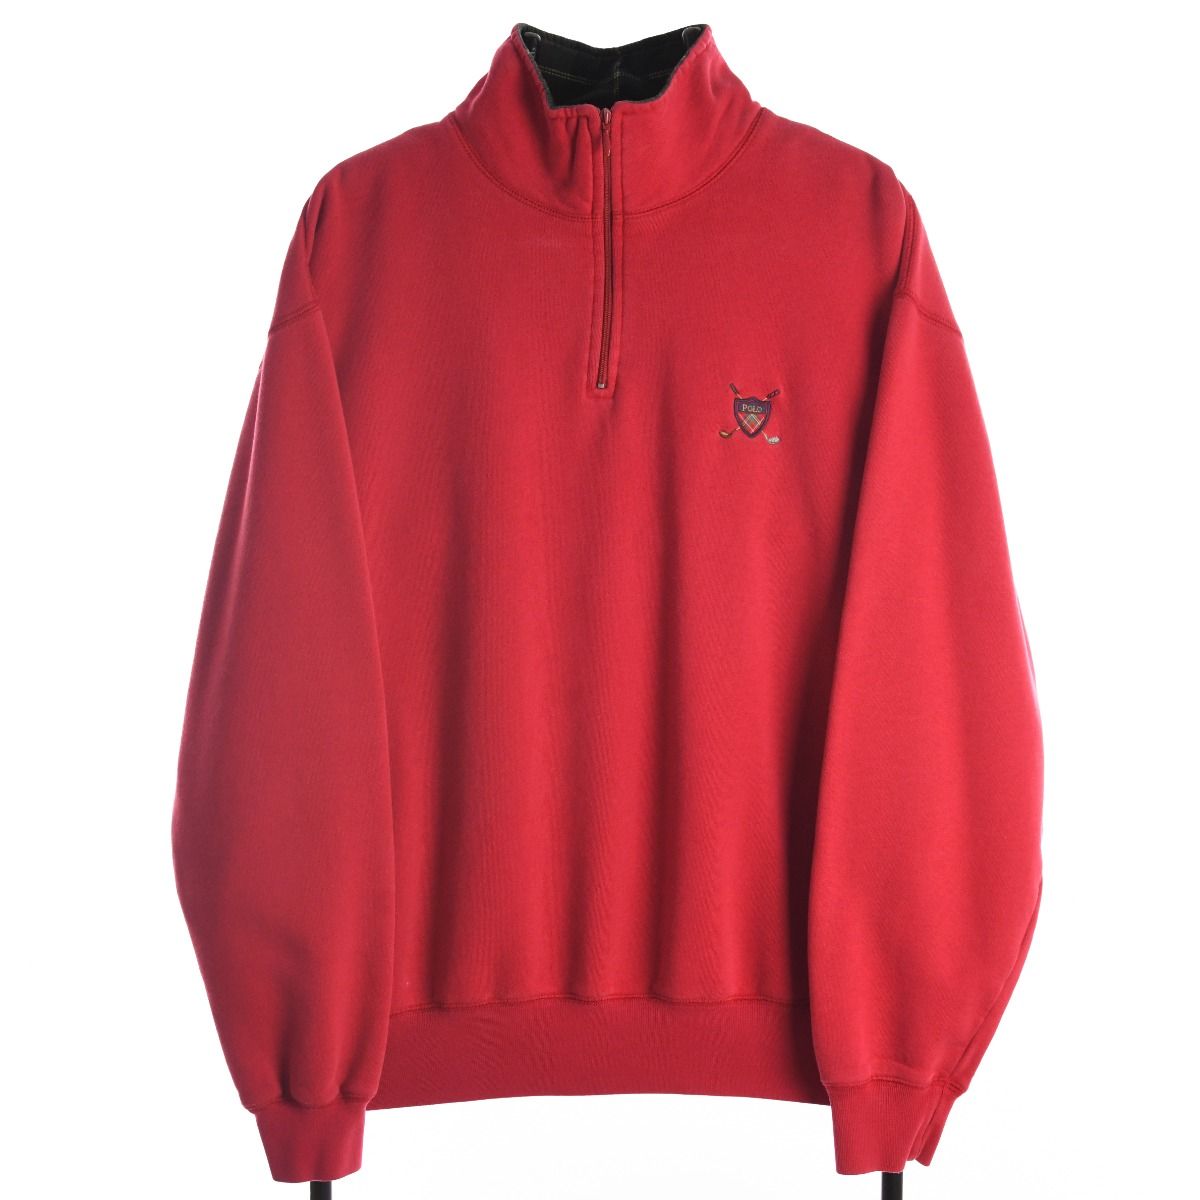 Ralph Lauren Polo Golf Quarter Zip Red Sweatshirt